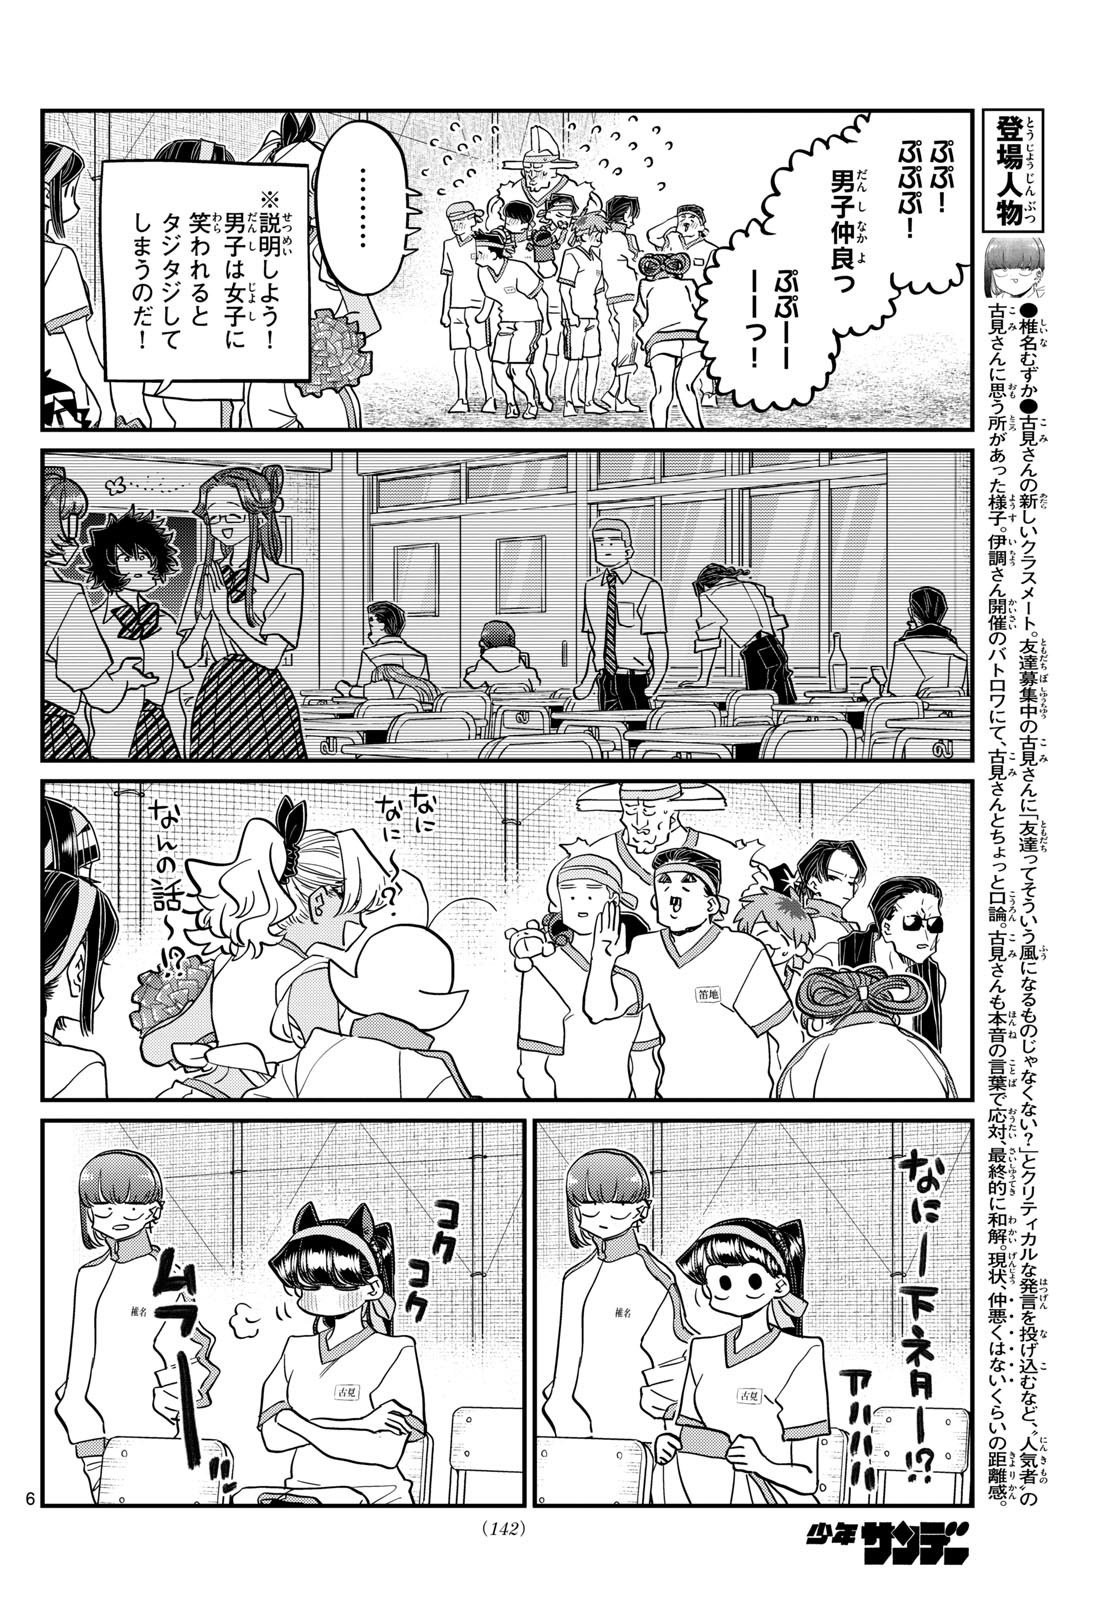 Komi-san wa Komyushou Desu - Chapter 432 - Page 6